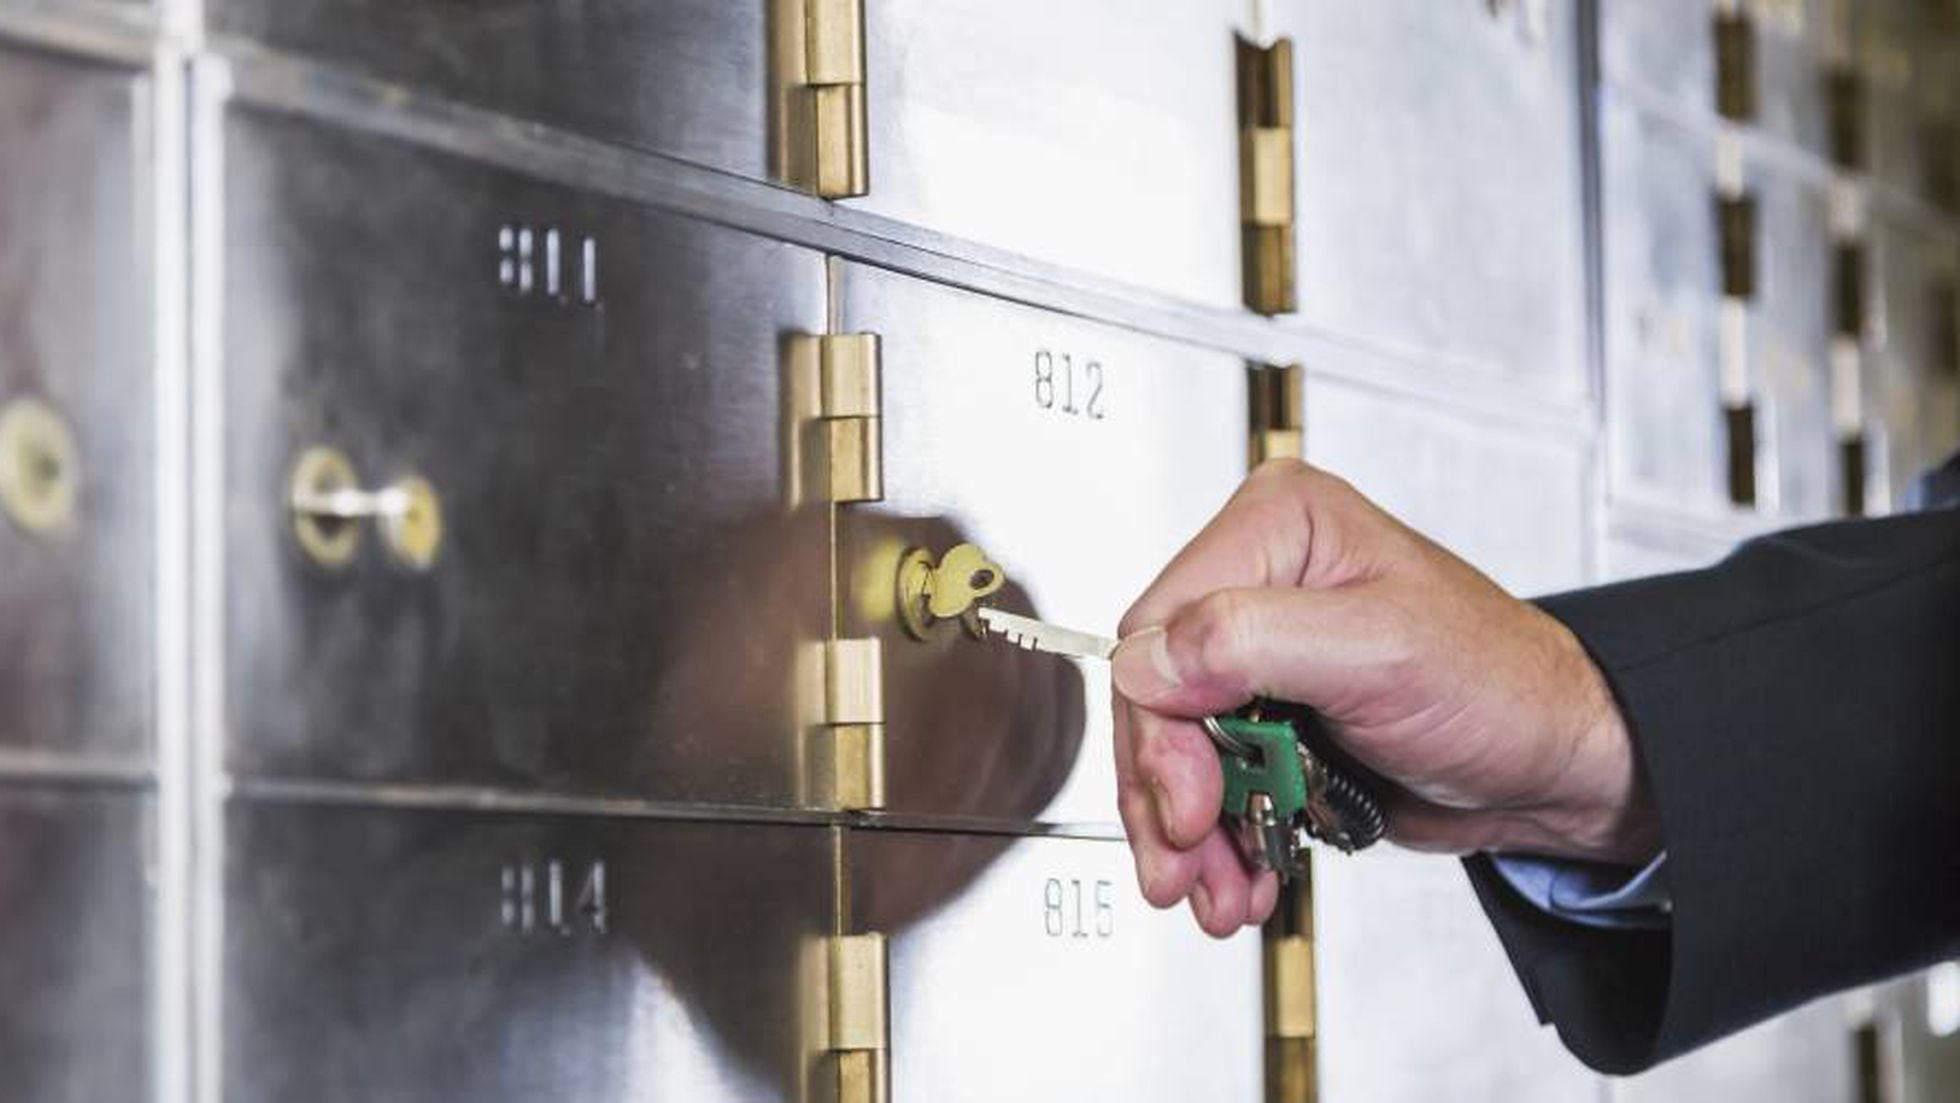 Oblongo radiador acción El uso de cajas de seguridad se abre paso ante la incertidumbre de los  depósitos | Empresas | Cinco Días